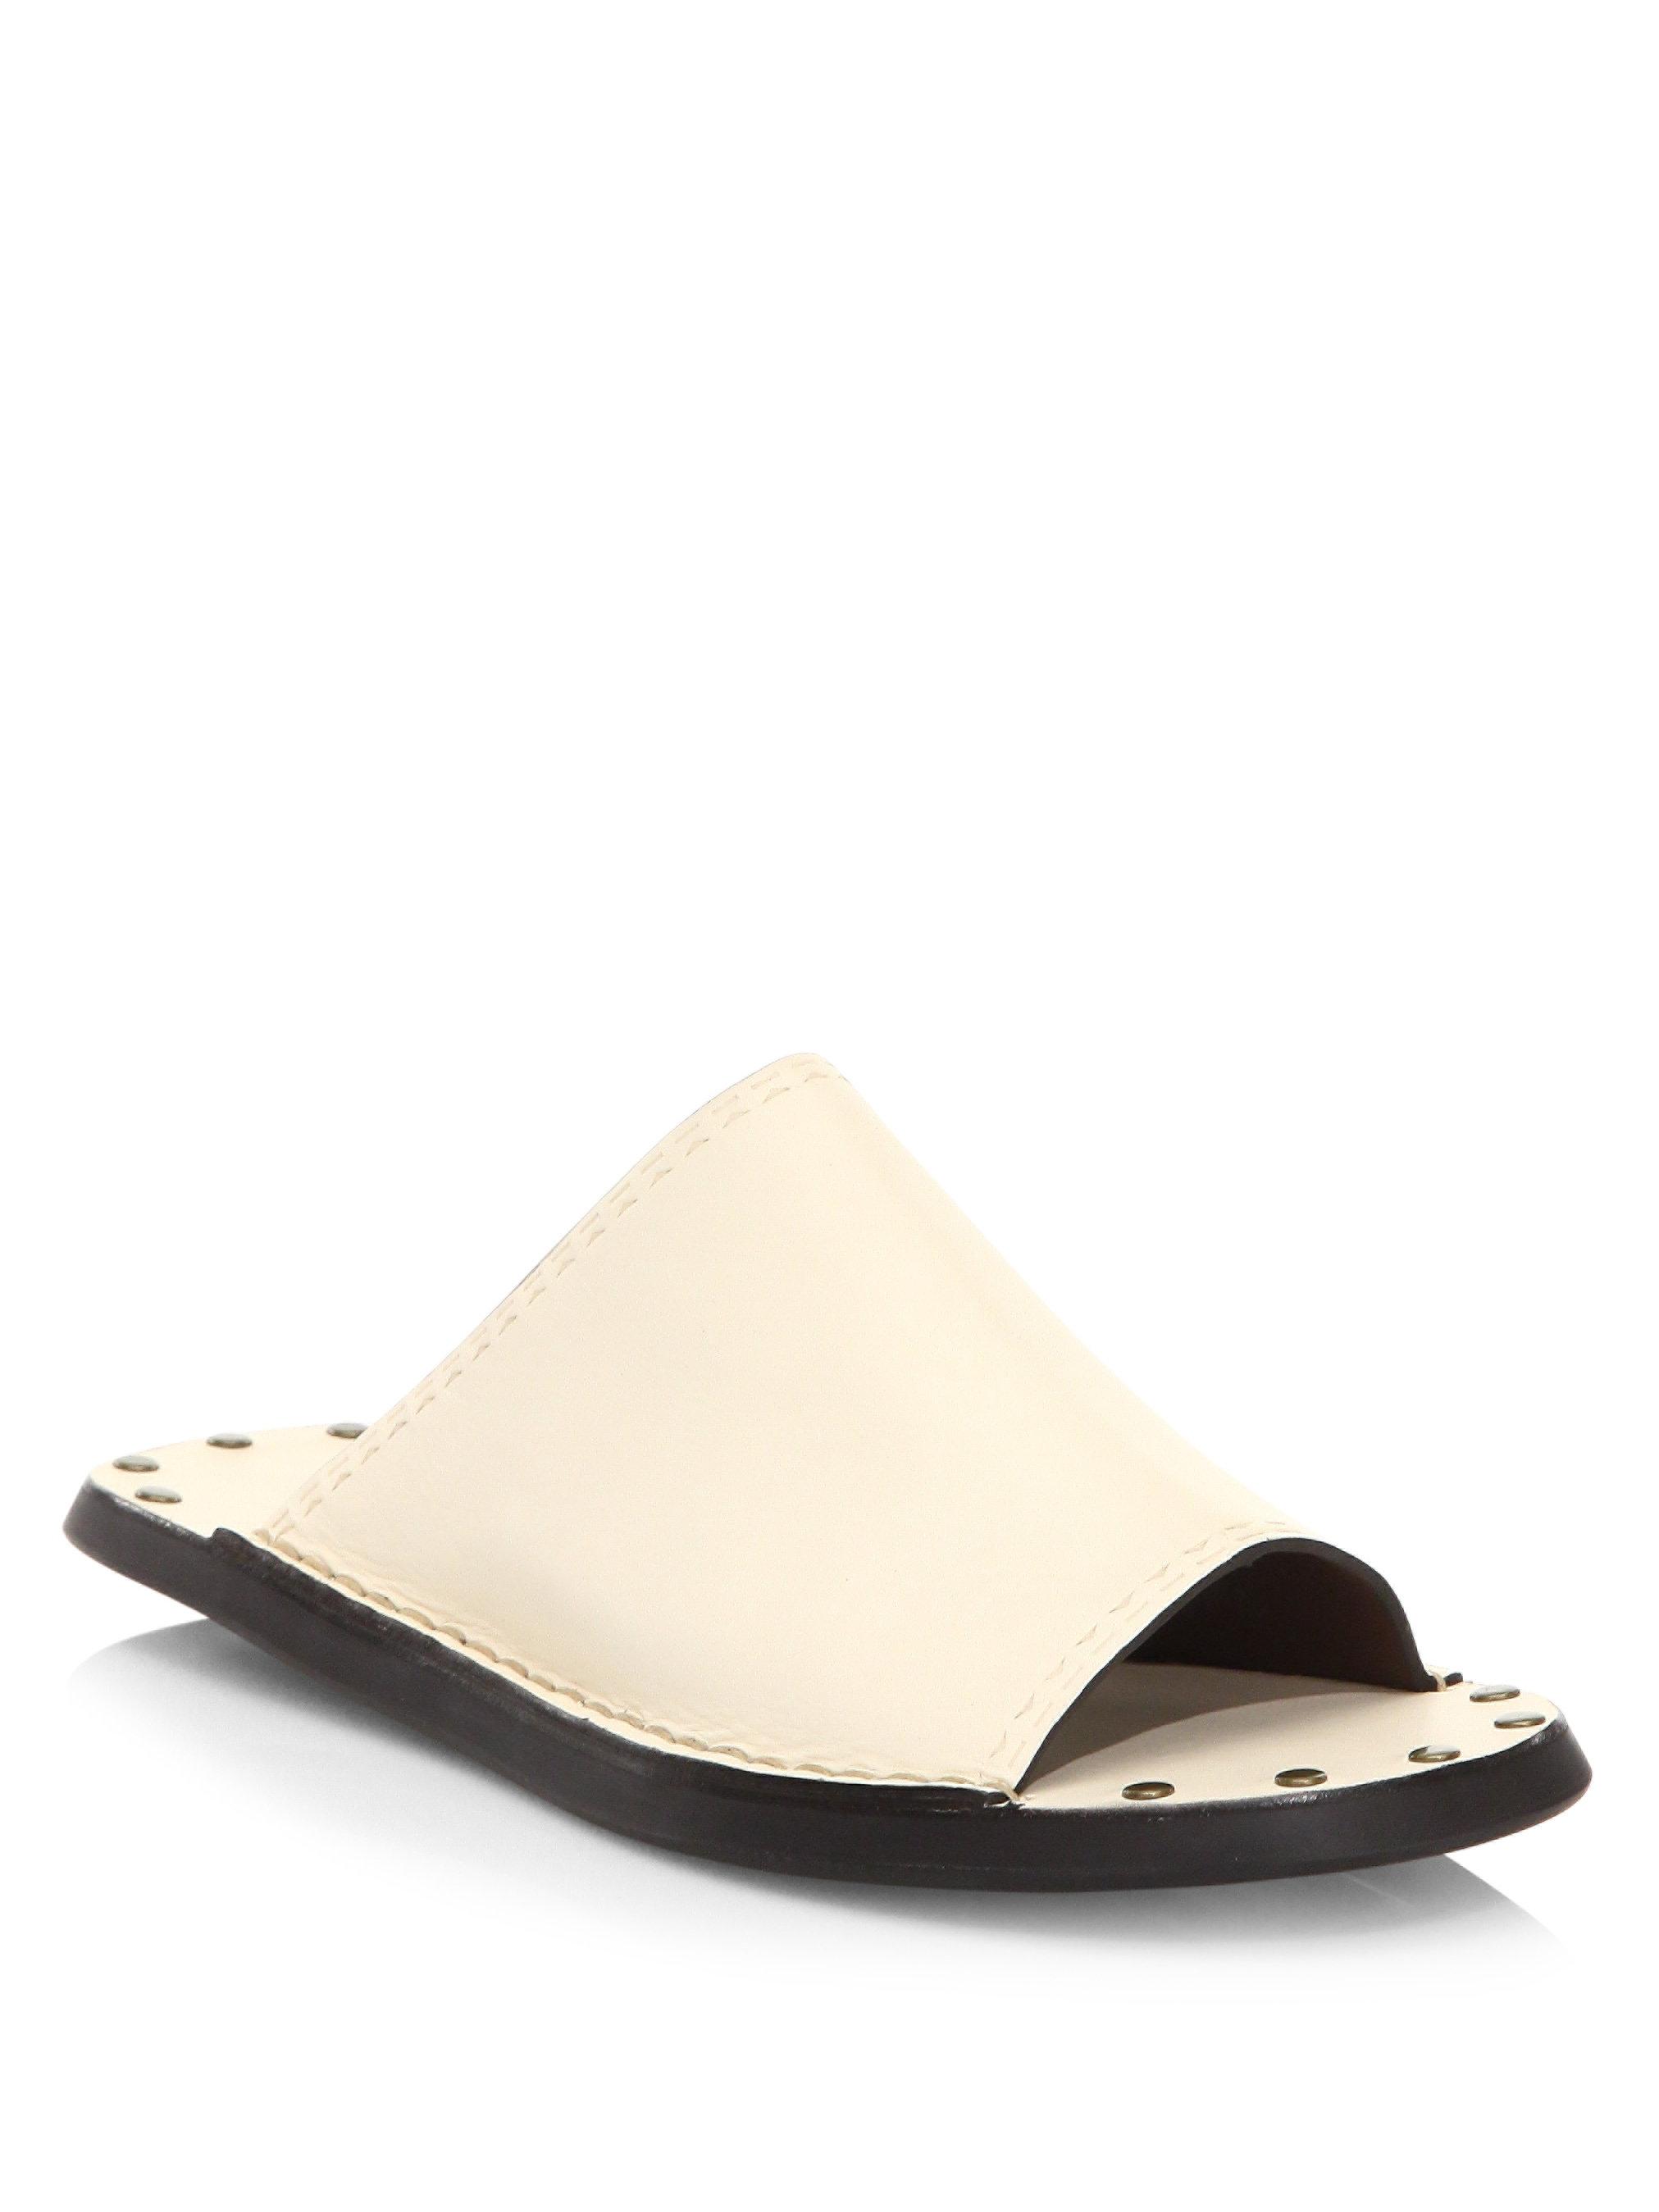 Ivory Leather Slide Sandals 